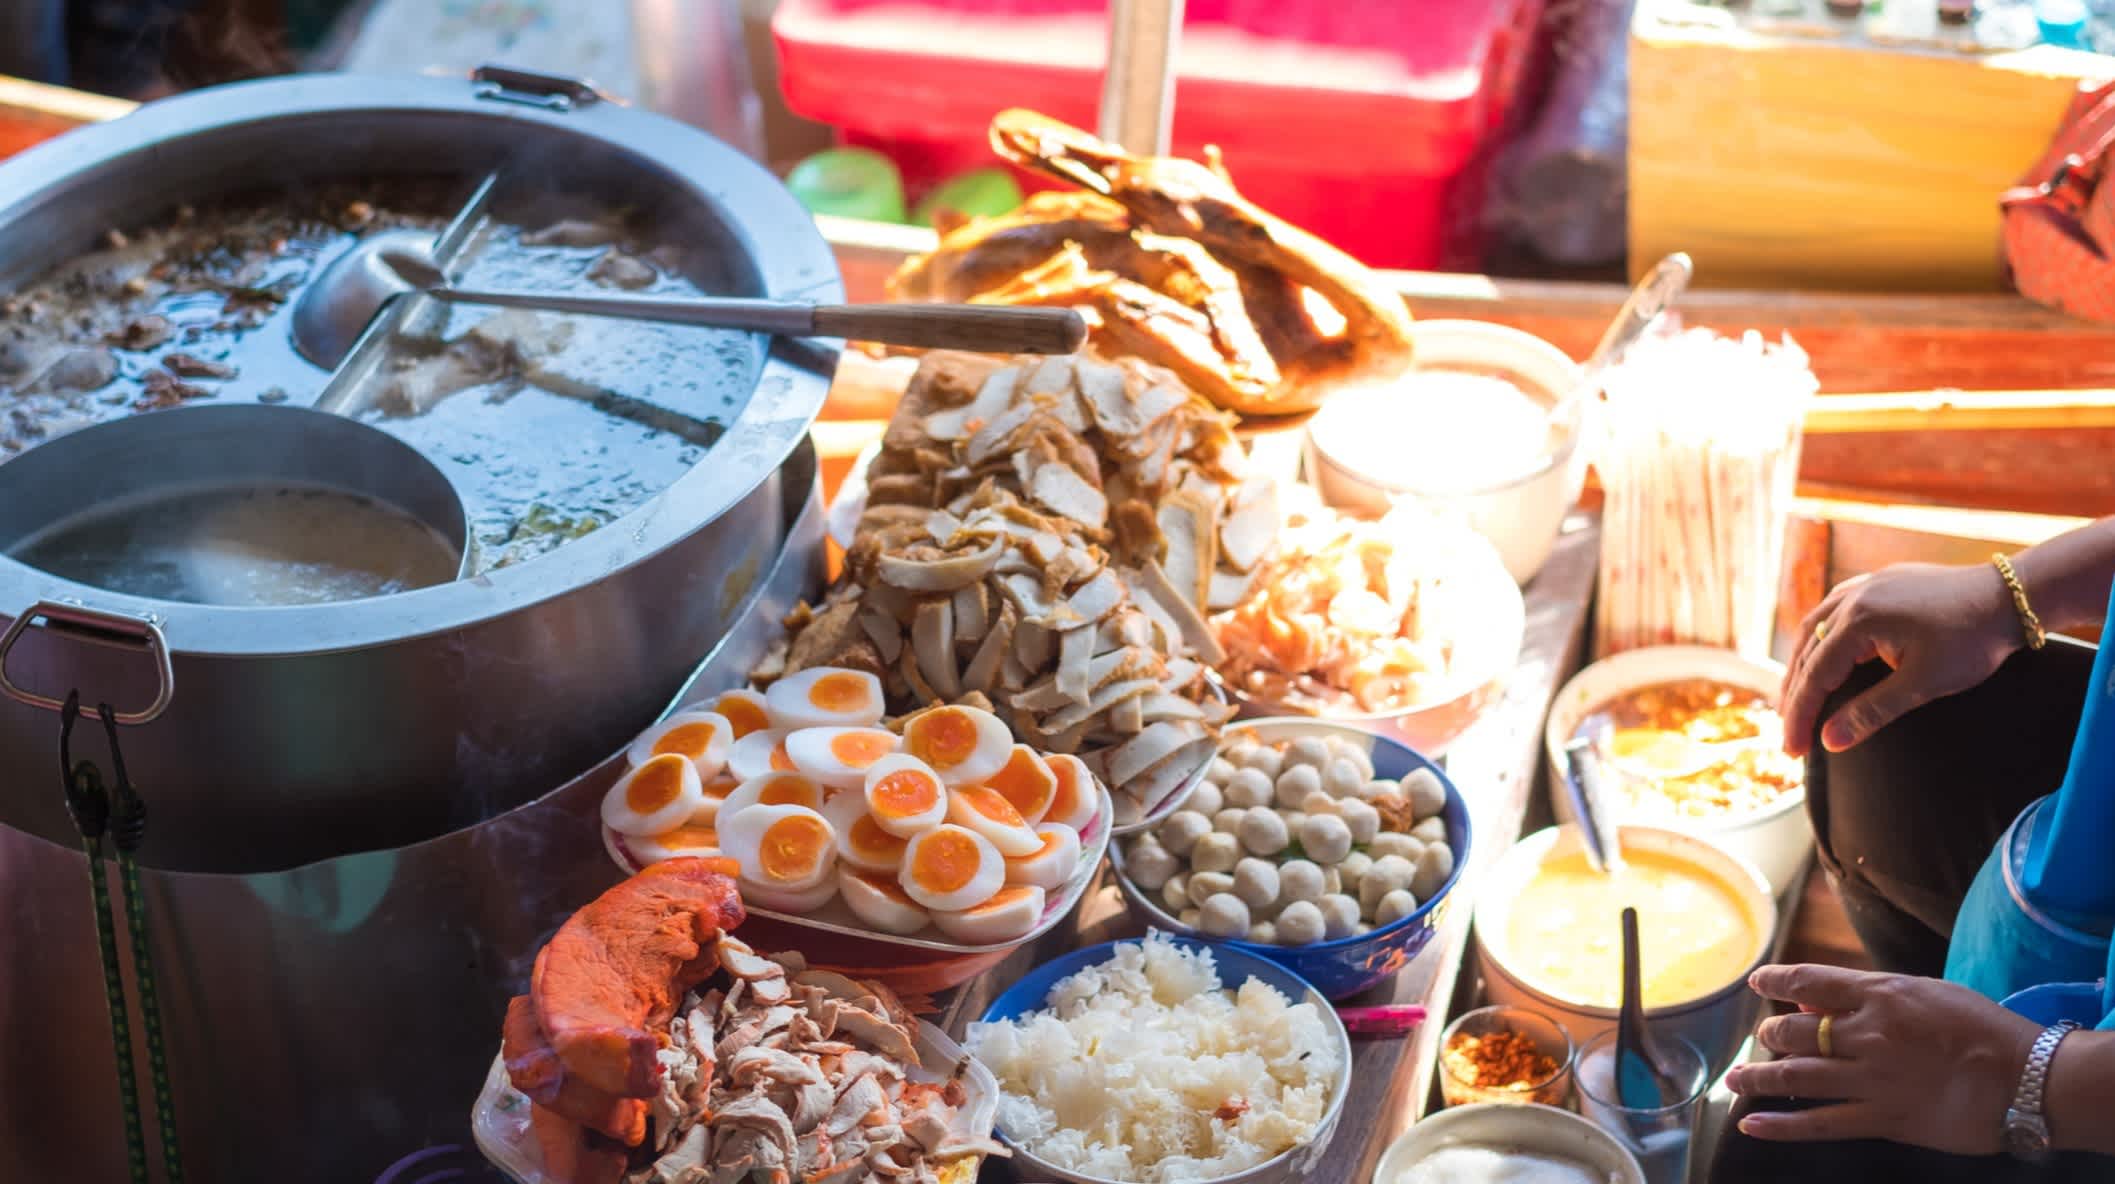 Nourriture thaïlandaise sur le marché flottant de Damnoen Saduak, Ratchaburi, Thaïlande.

